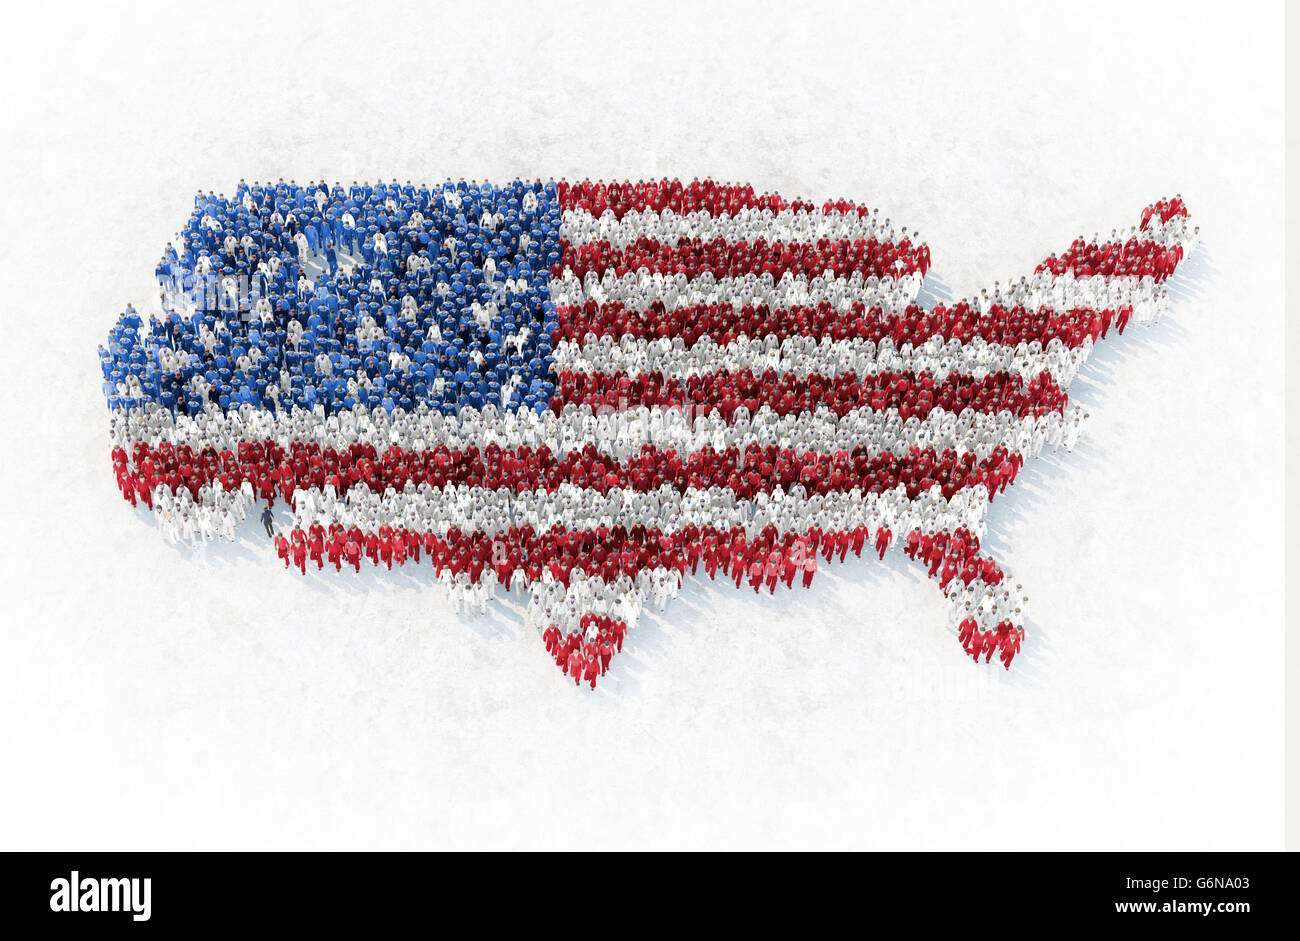 Die Gliederung der USA von Menschen gebildet gekleidet in rot, blau und weiß - 3D-Illustration Stockfoto